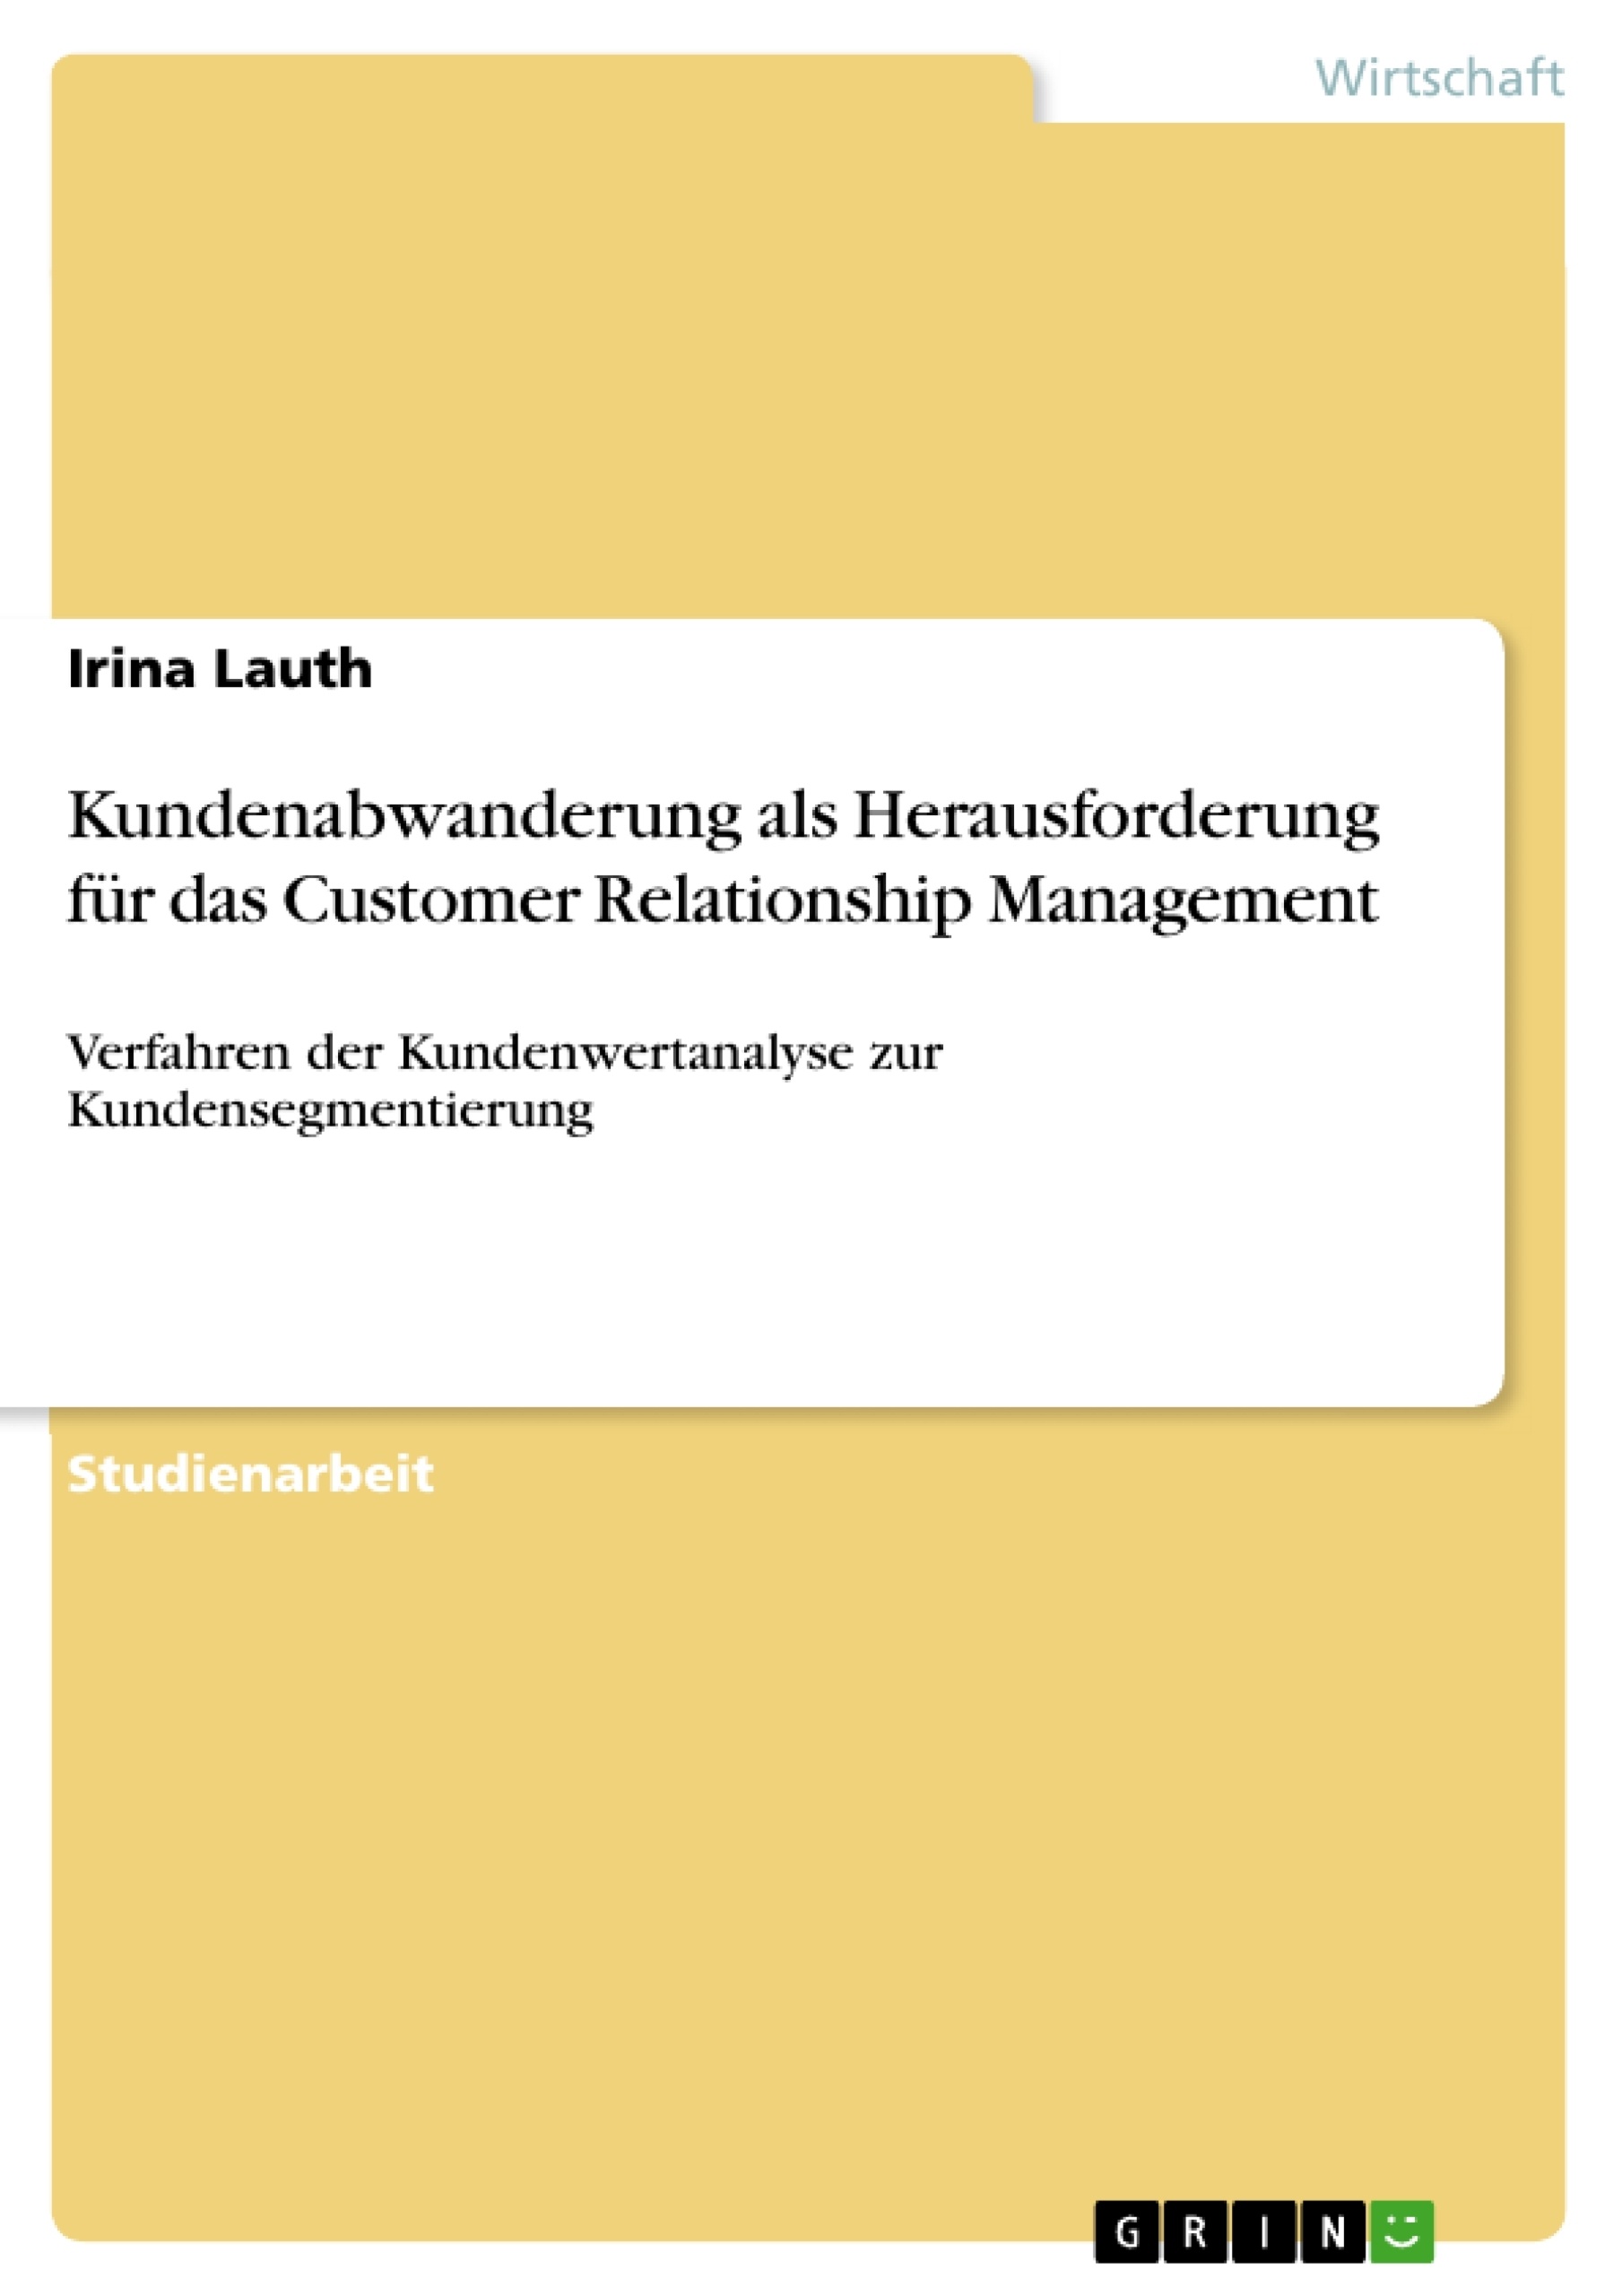 Title: Kundenabwanderung als Herausforderung für das Customer Relationship Management